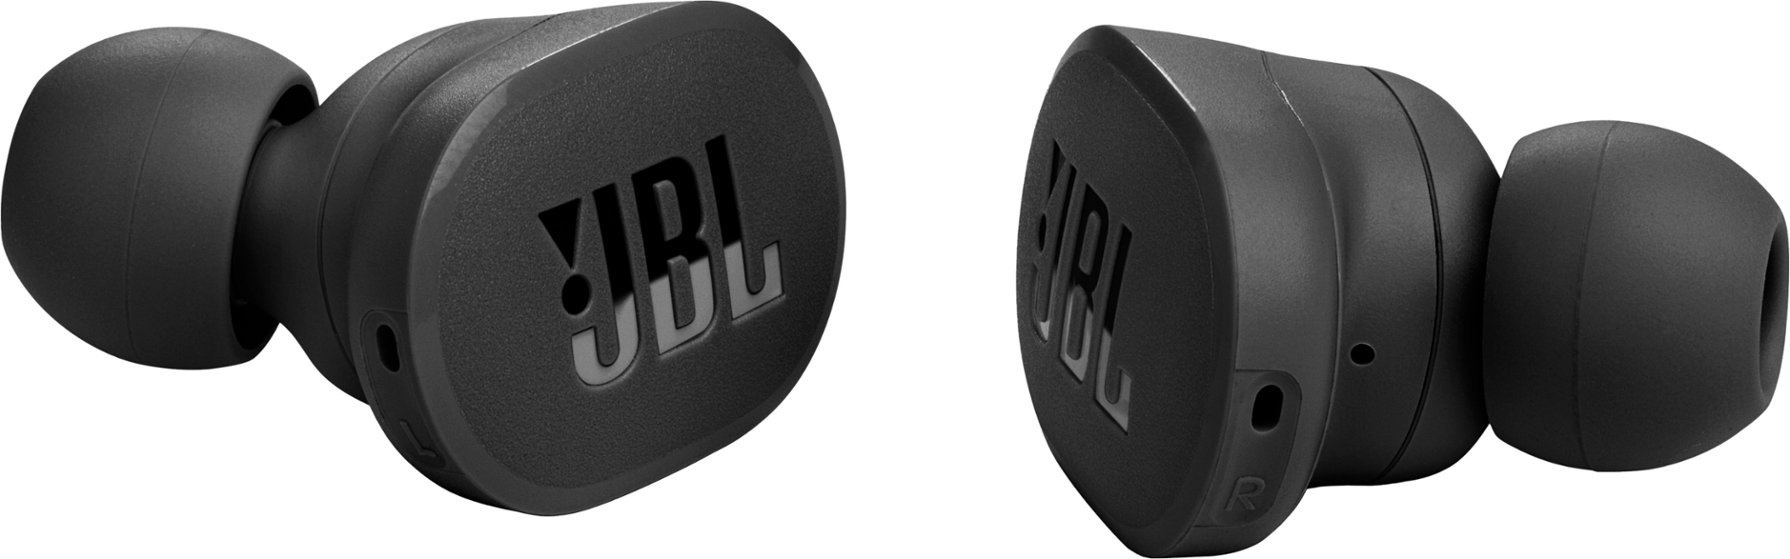 JBL Tune 130NC Noise-Canceling True Wireless In-Ear Headphones (Black)